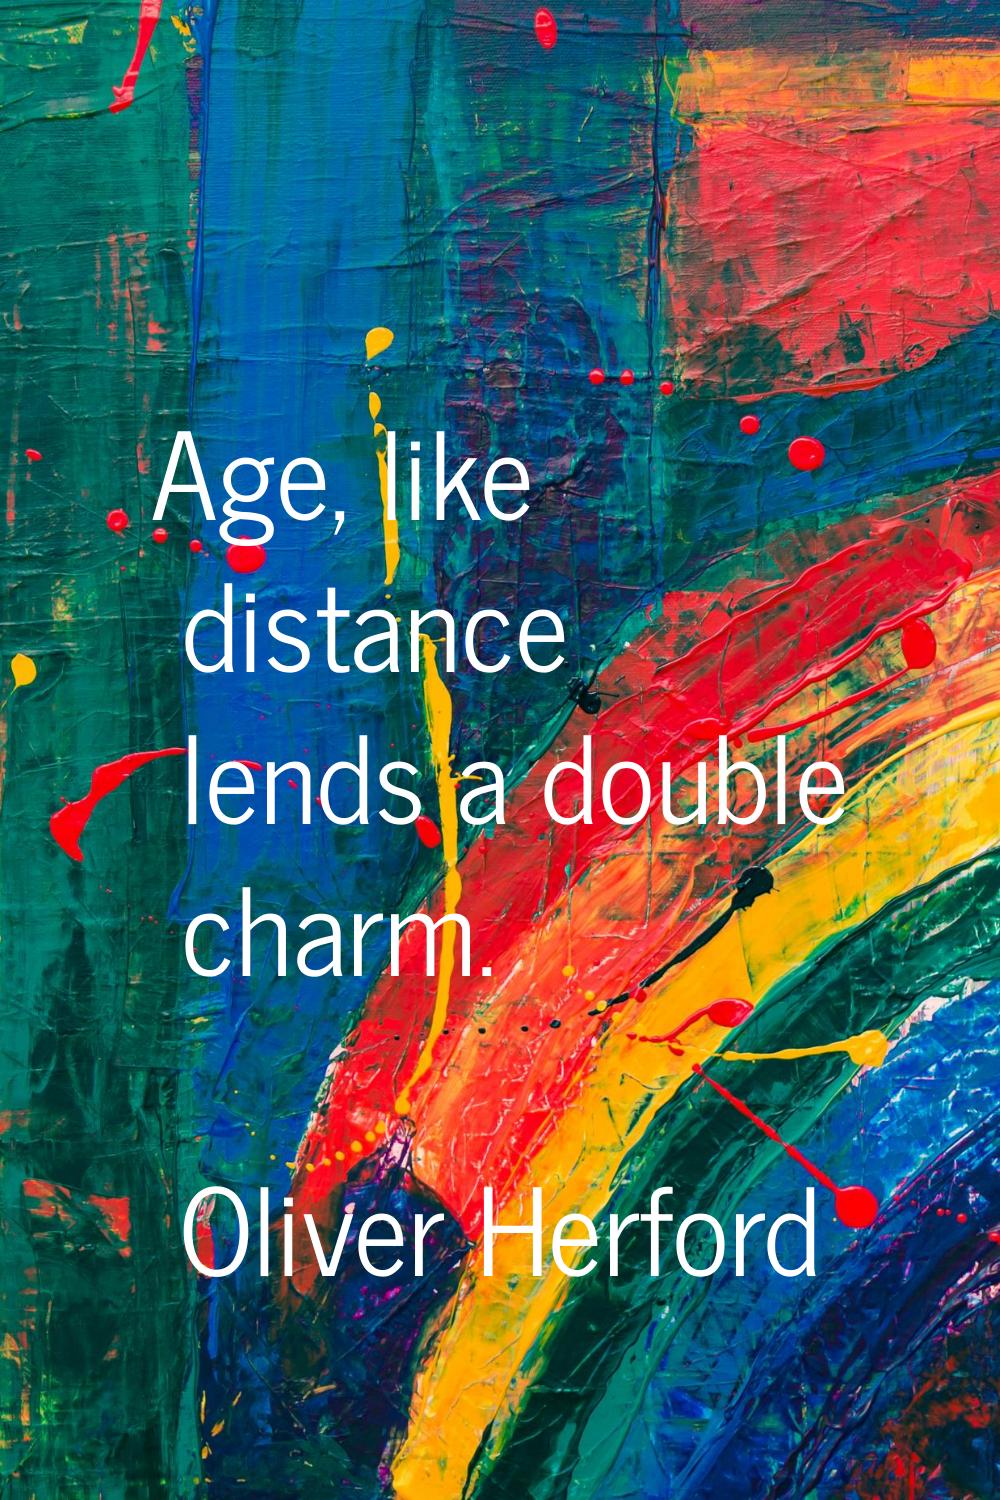 Age, like distance lends a double charm.